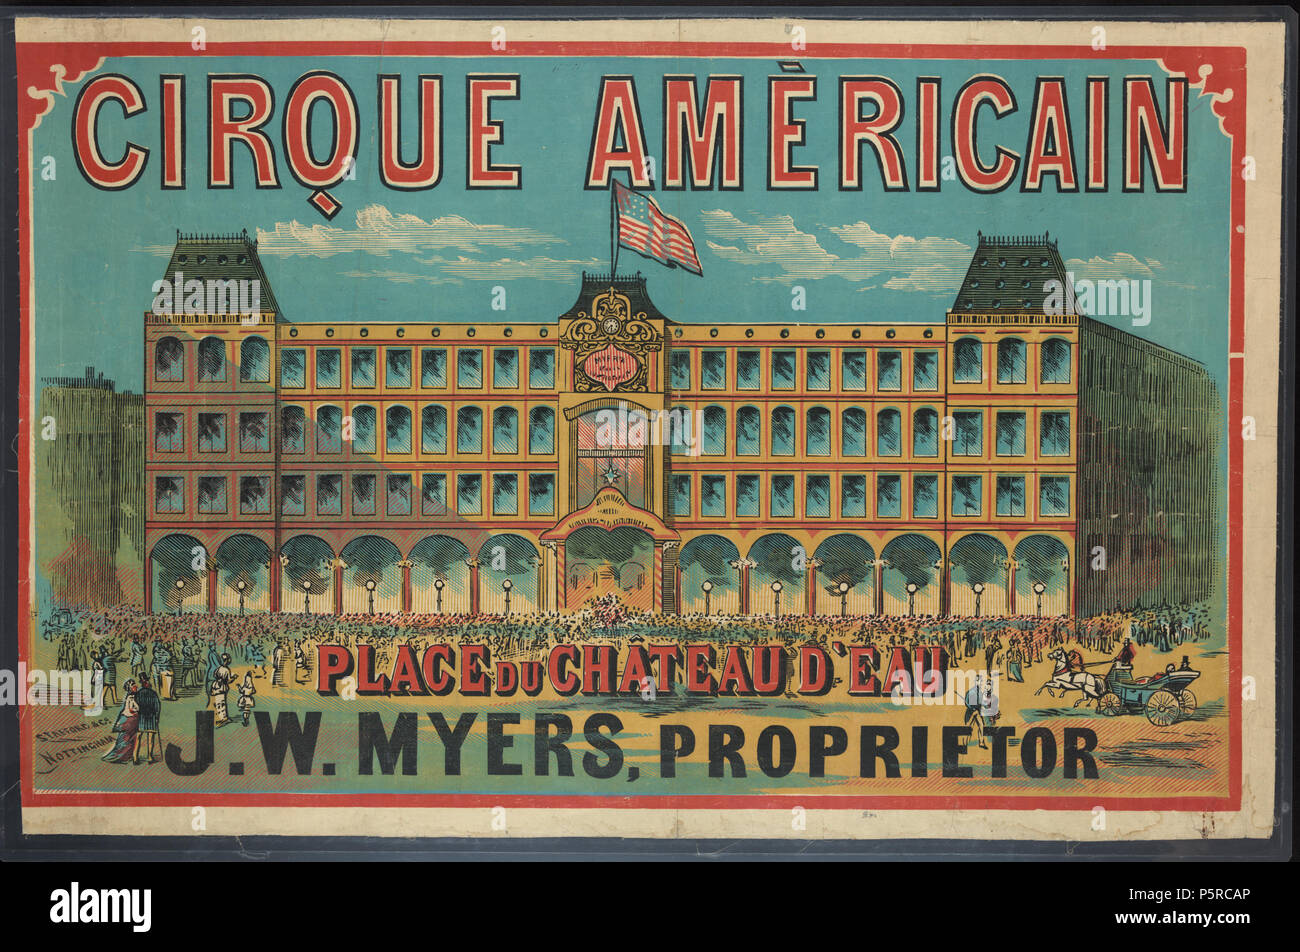 349 Cirque Américain - Place du Chateau d'Eau, J.W. Myers, proprietor - Library of Congress Stock Photo